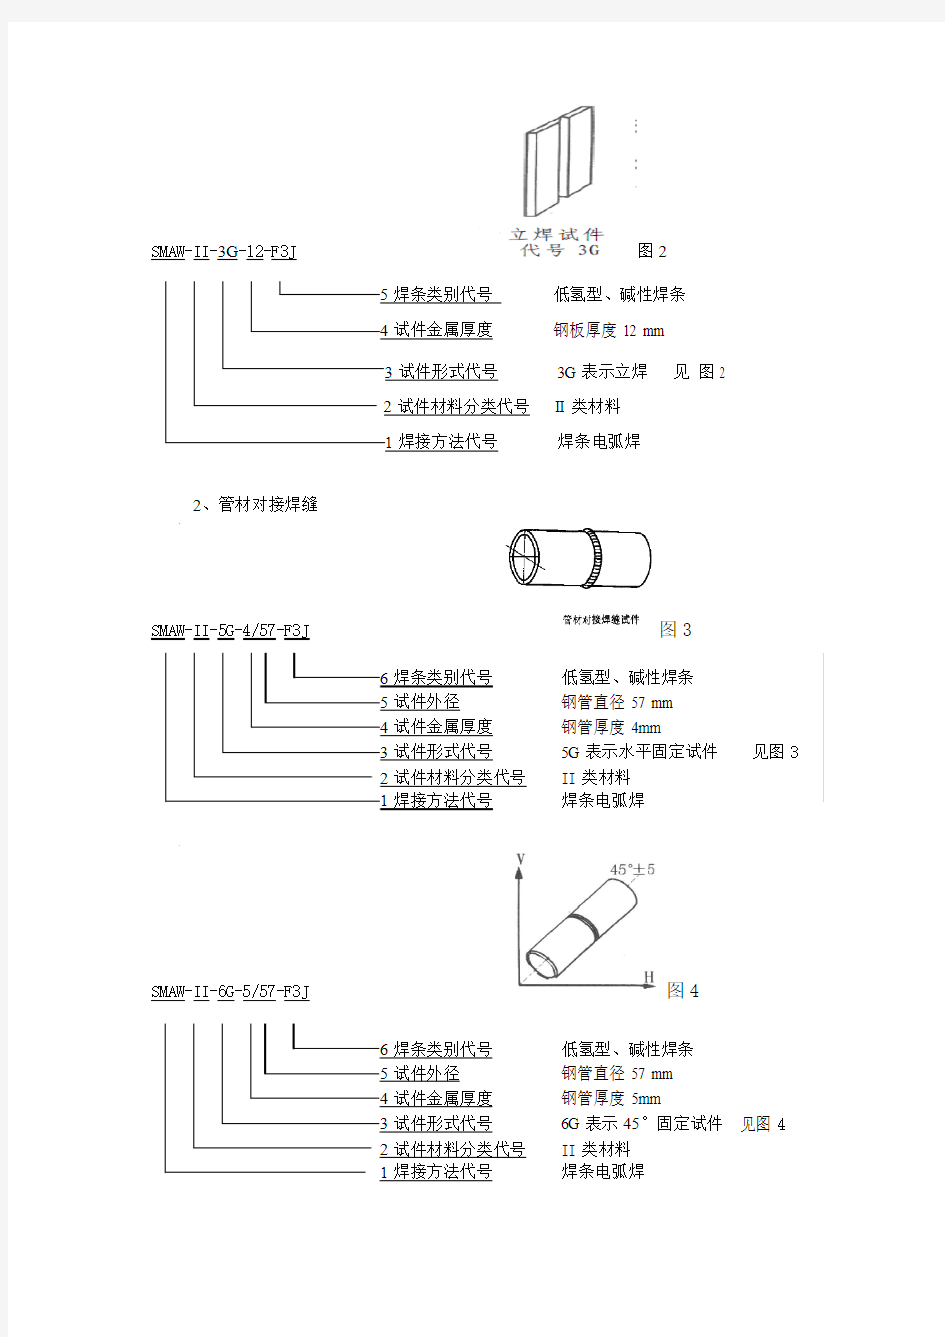 对焊条电弧焊常用焊工项目代号的解释